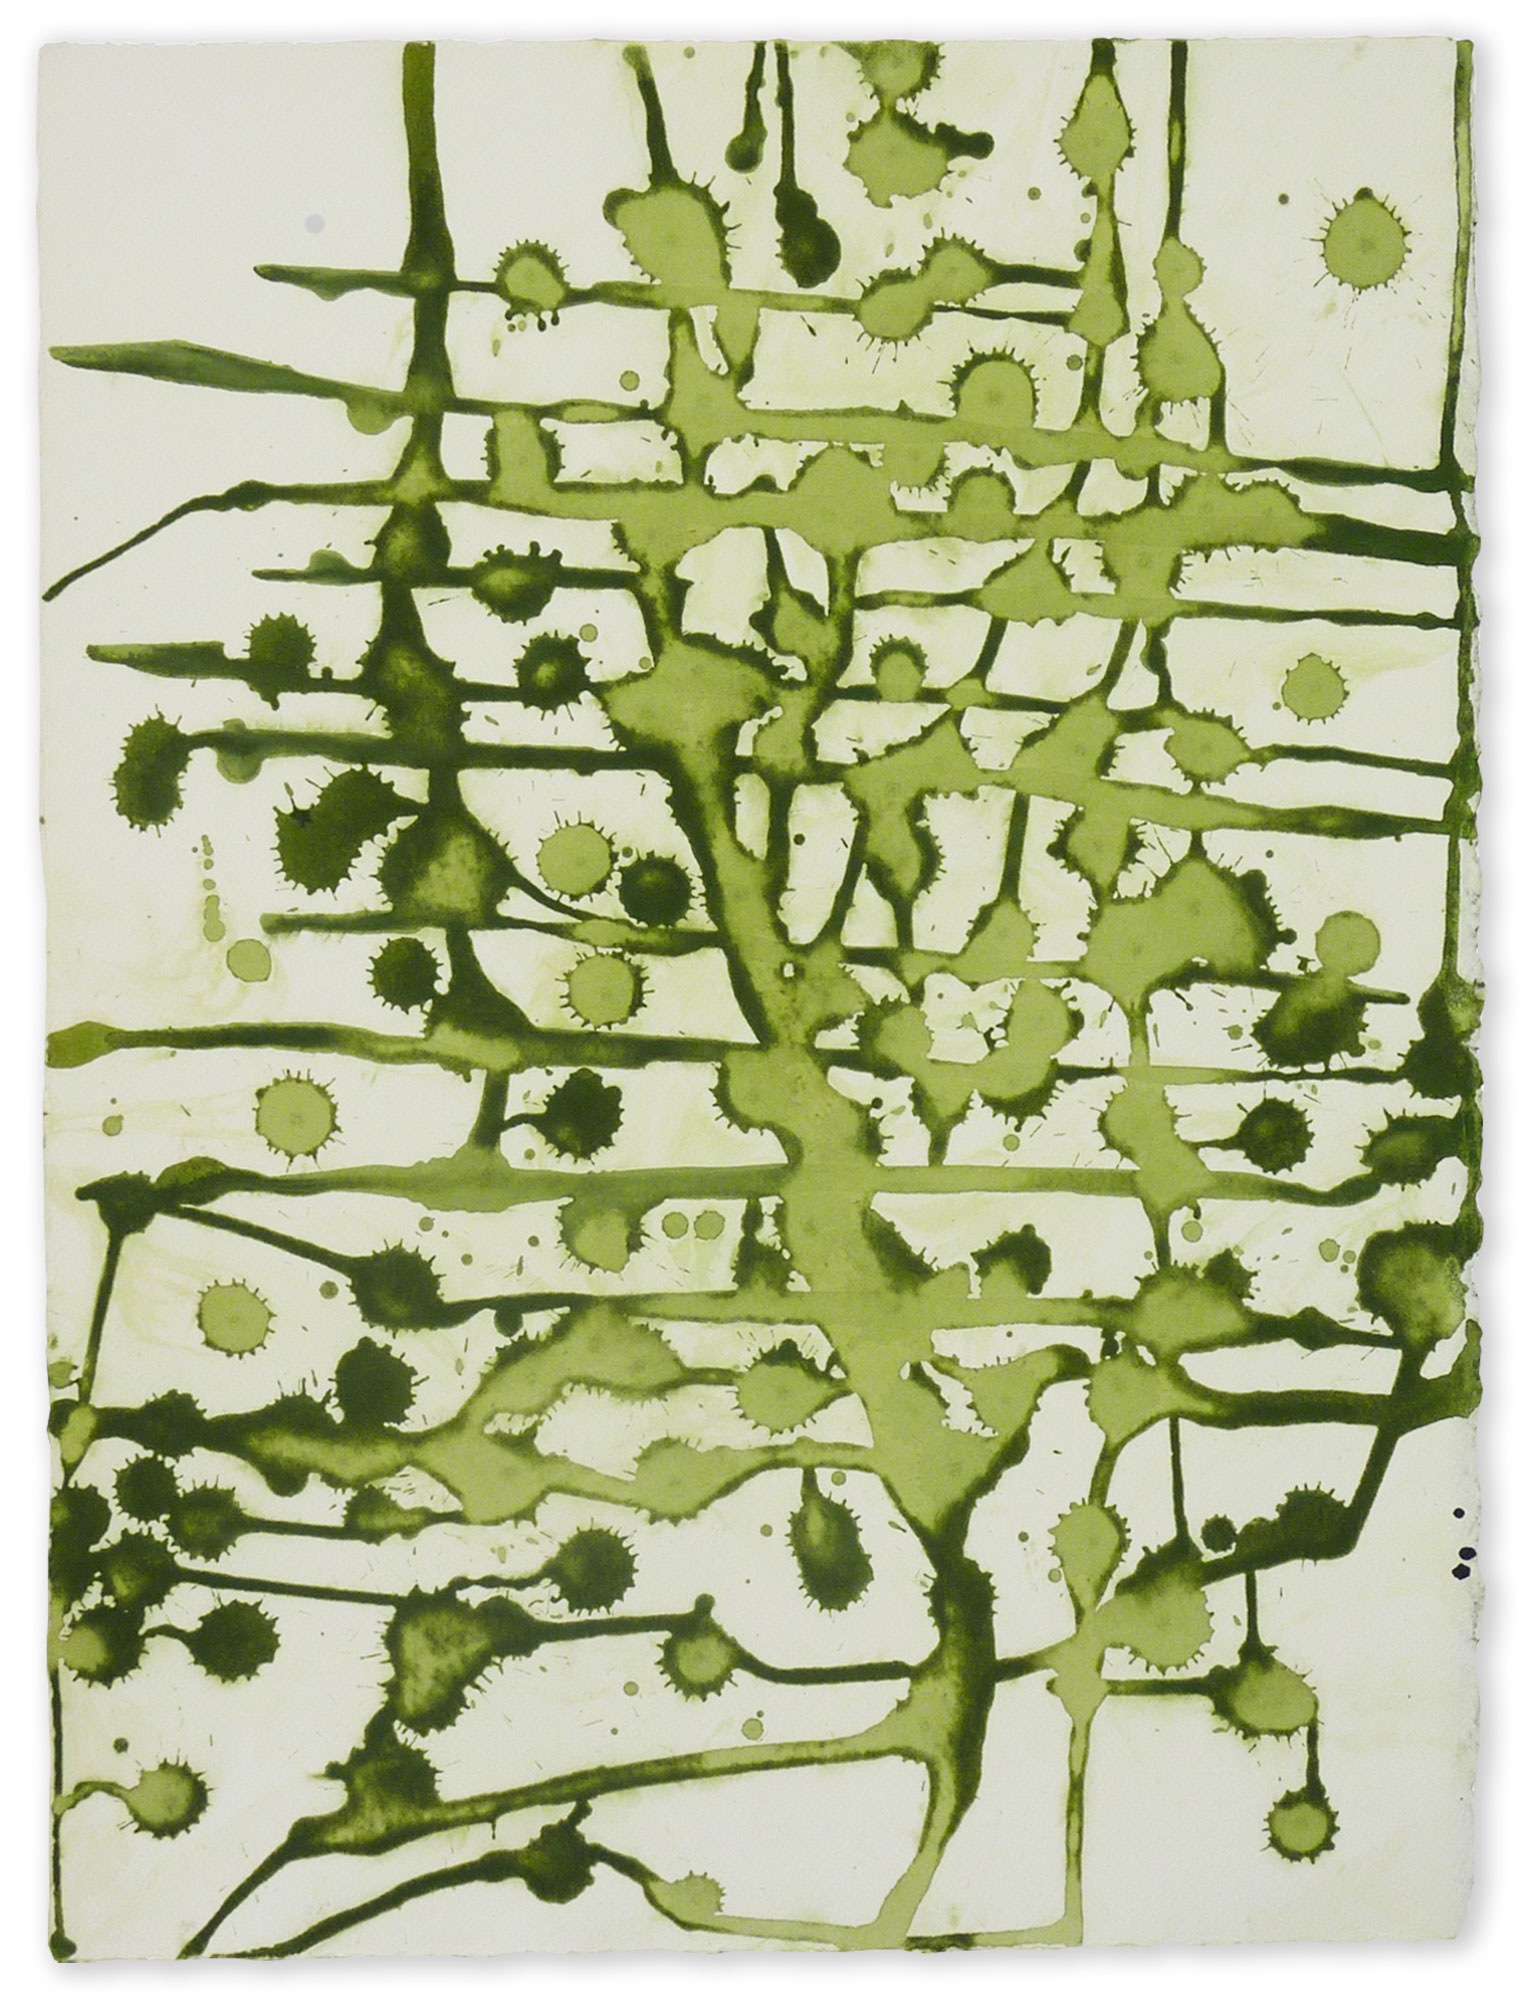 MAS M18 / 2009, watercolor on paper, 45 x 35 cm